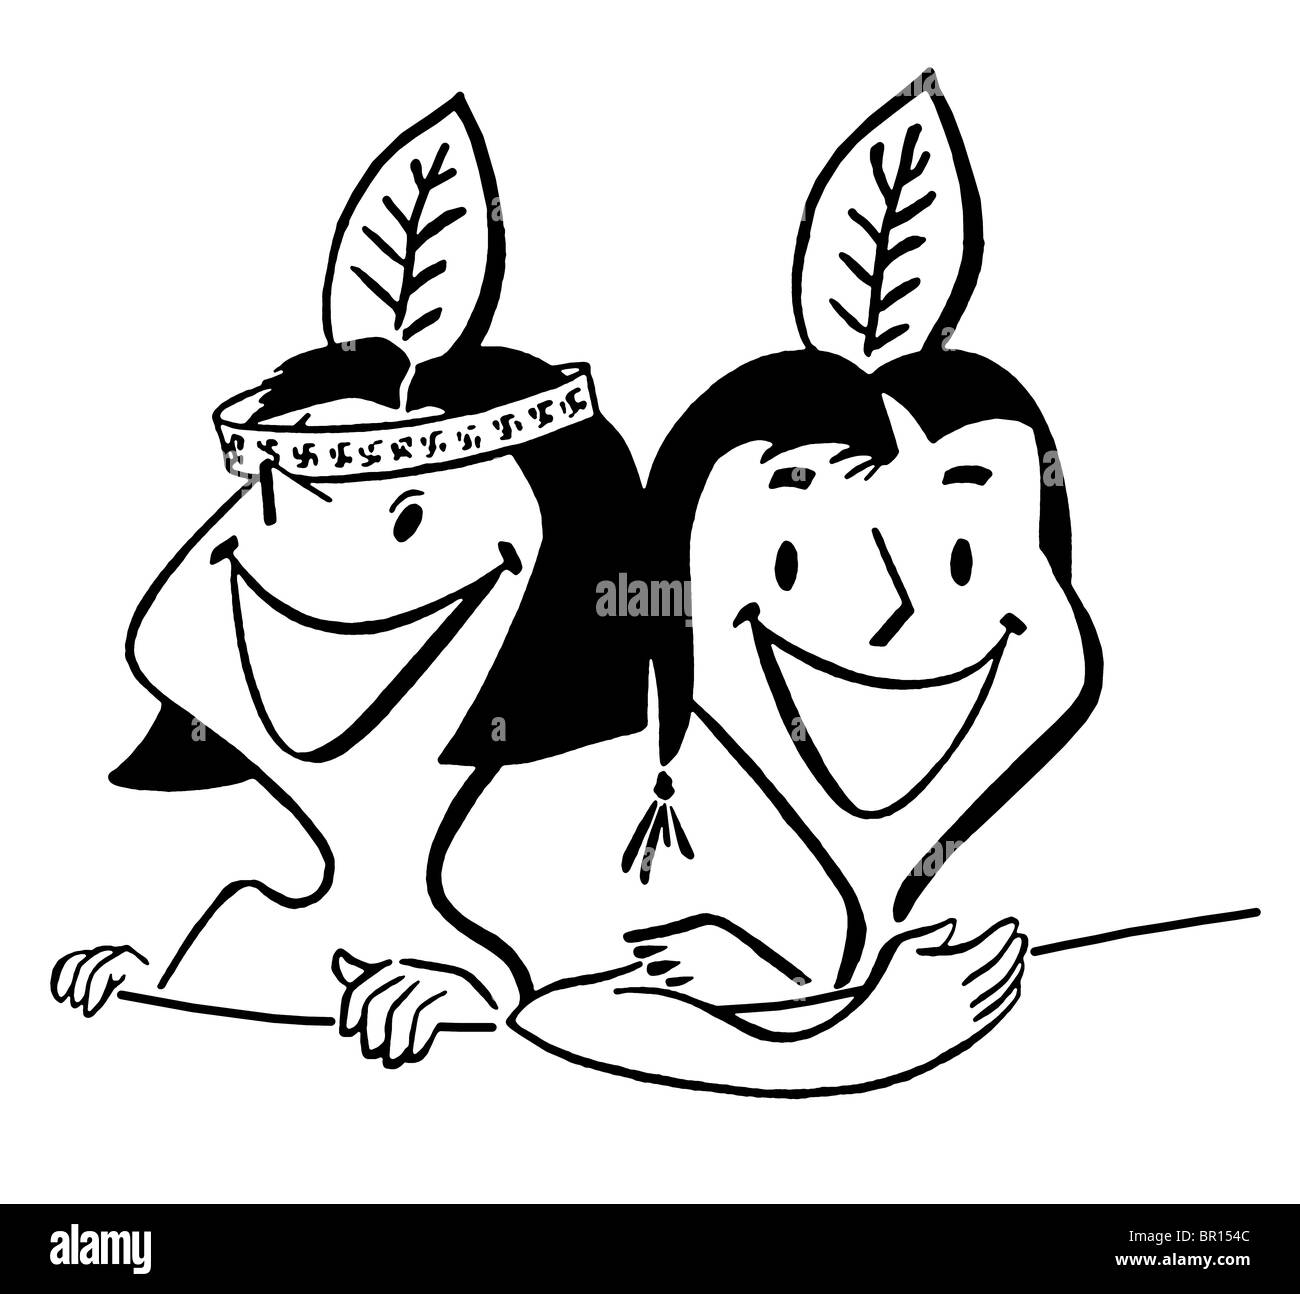 Une version noir et blanc d'un cartoon style vintage illustration de deux jeunes enfants Banque D'Images